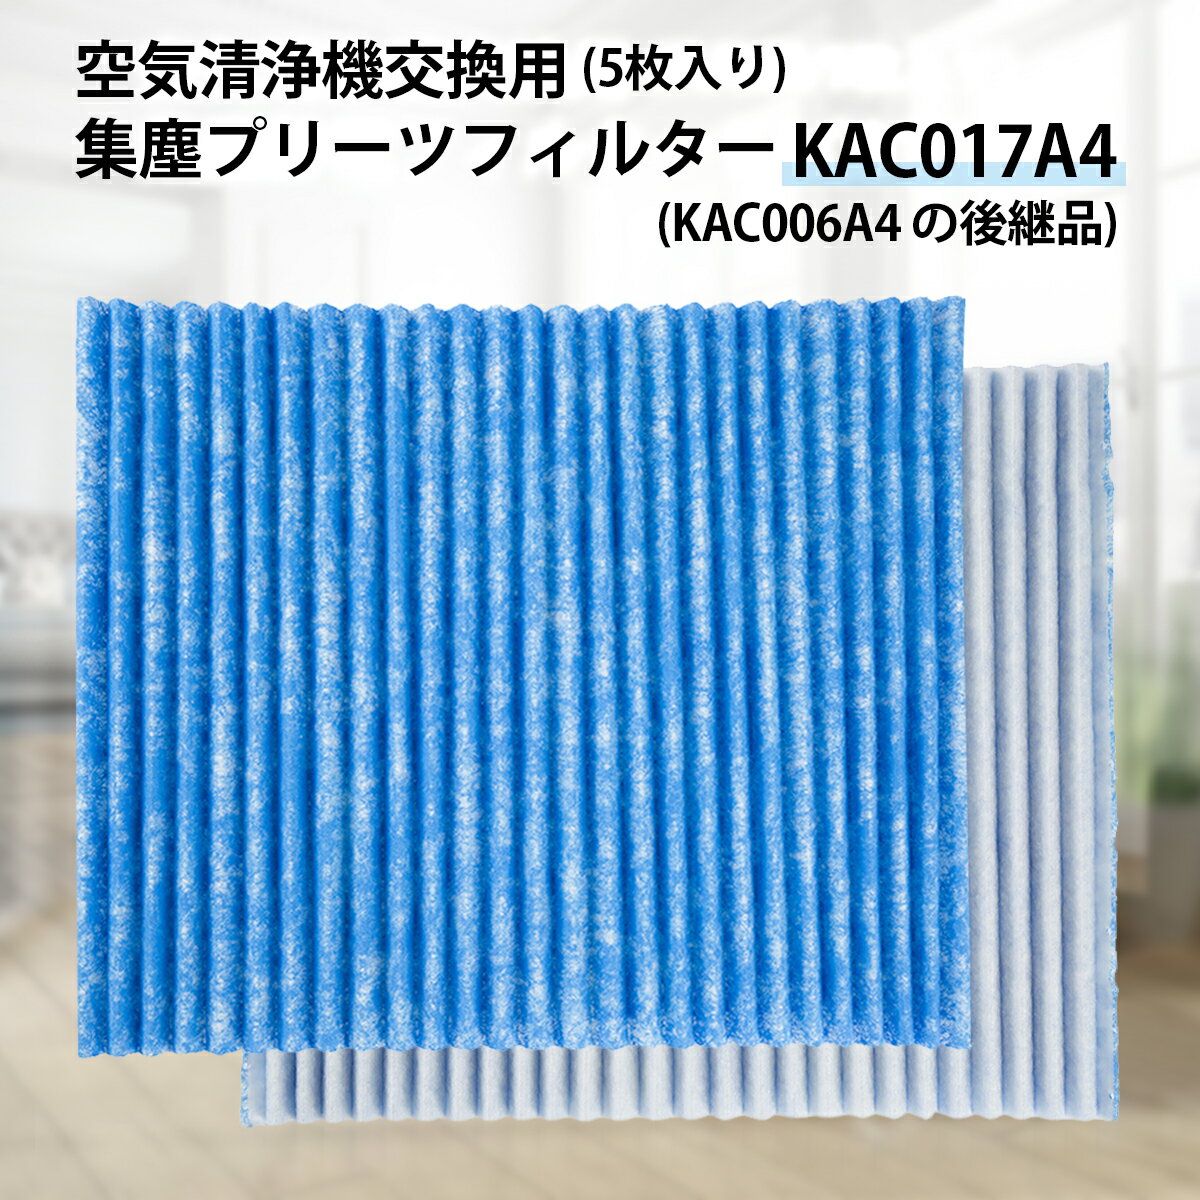 ダイキン KAC017A4 プリーツフィルター kac017a4 (KAC006A4の後継品) ダイキン加湿空気清浄機 フィルター 交換用集塵光触媒フィルター 「互換品/5枚入り」